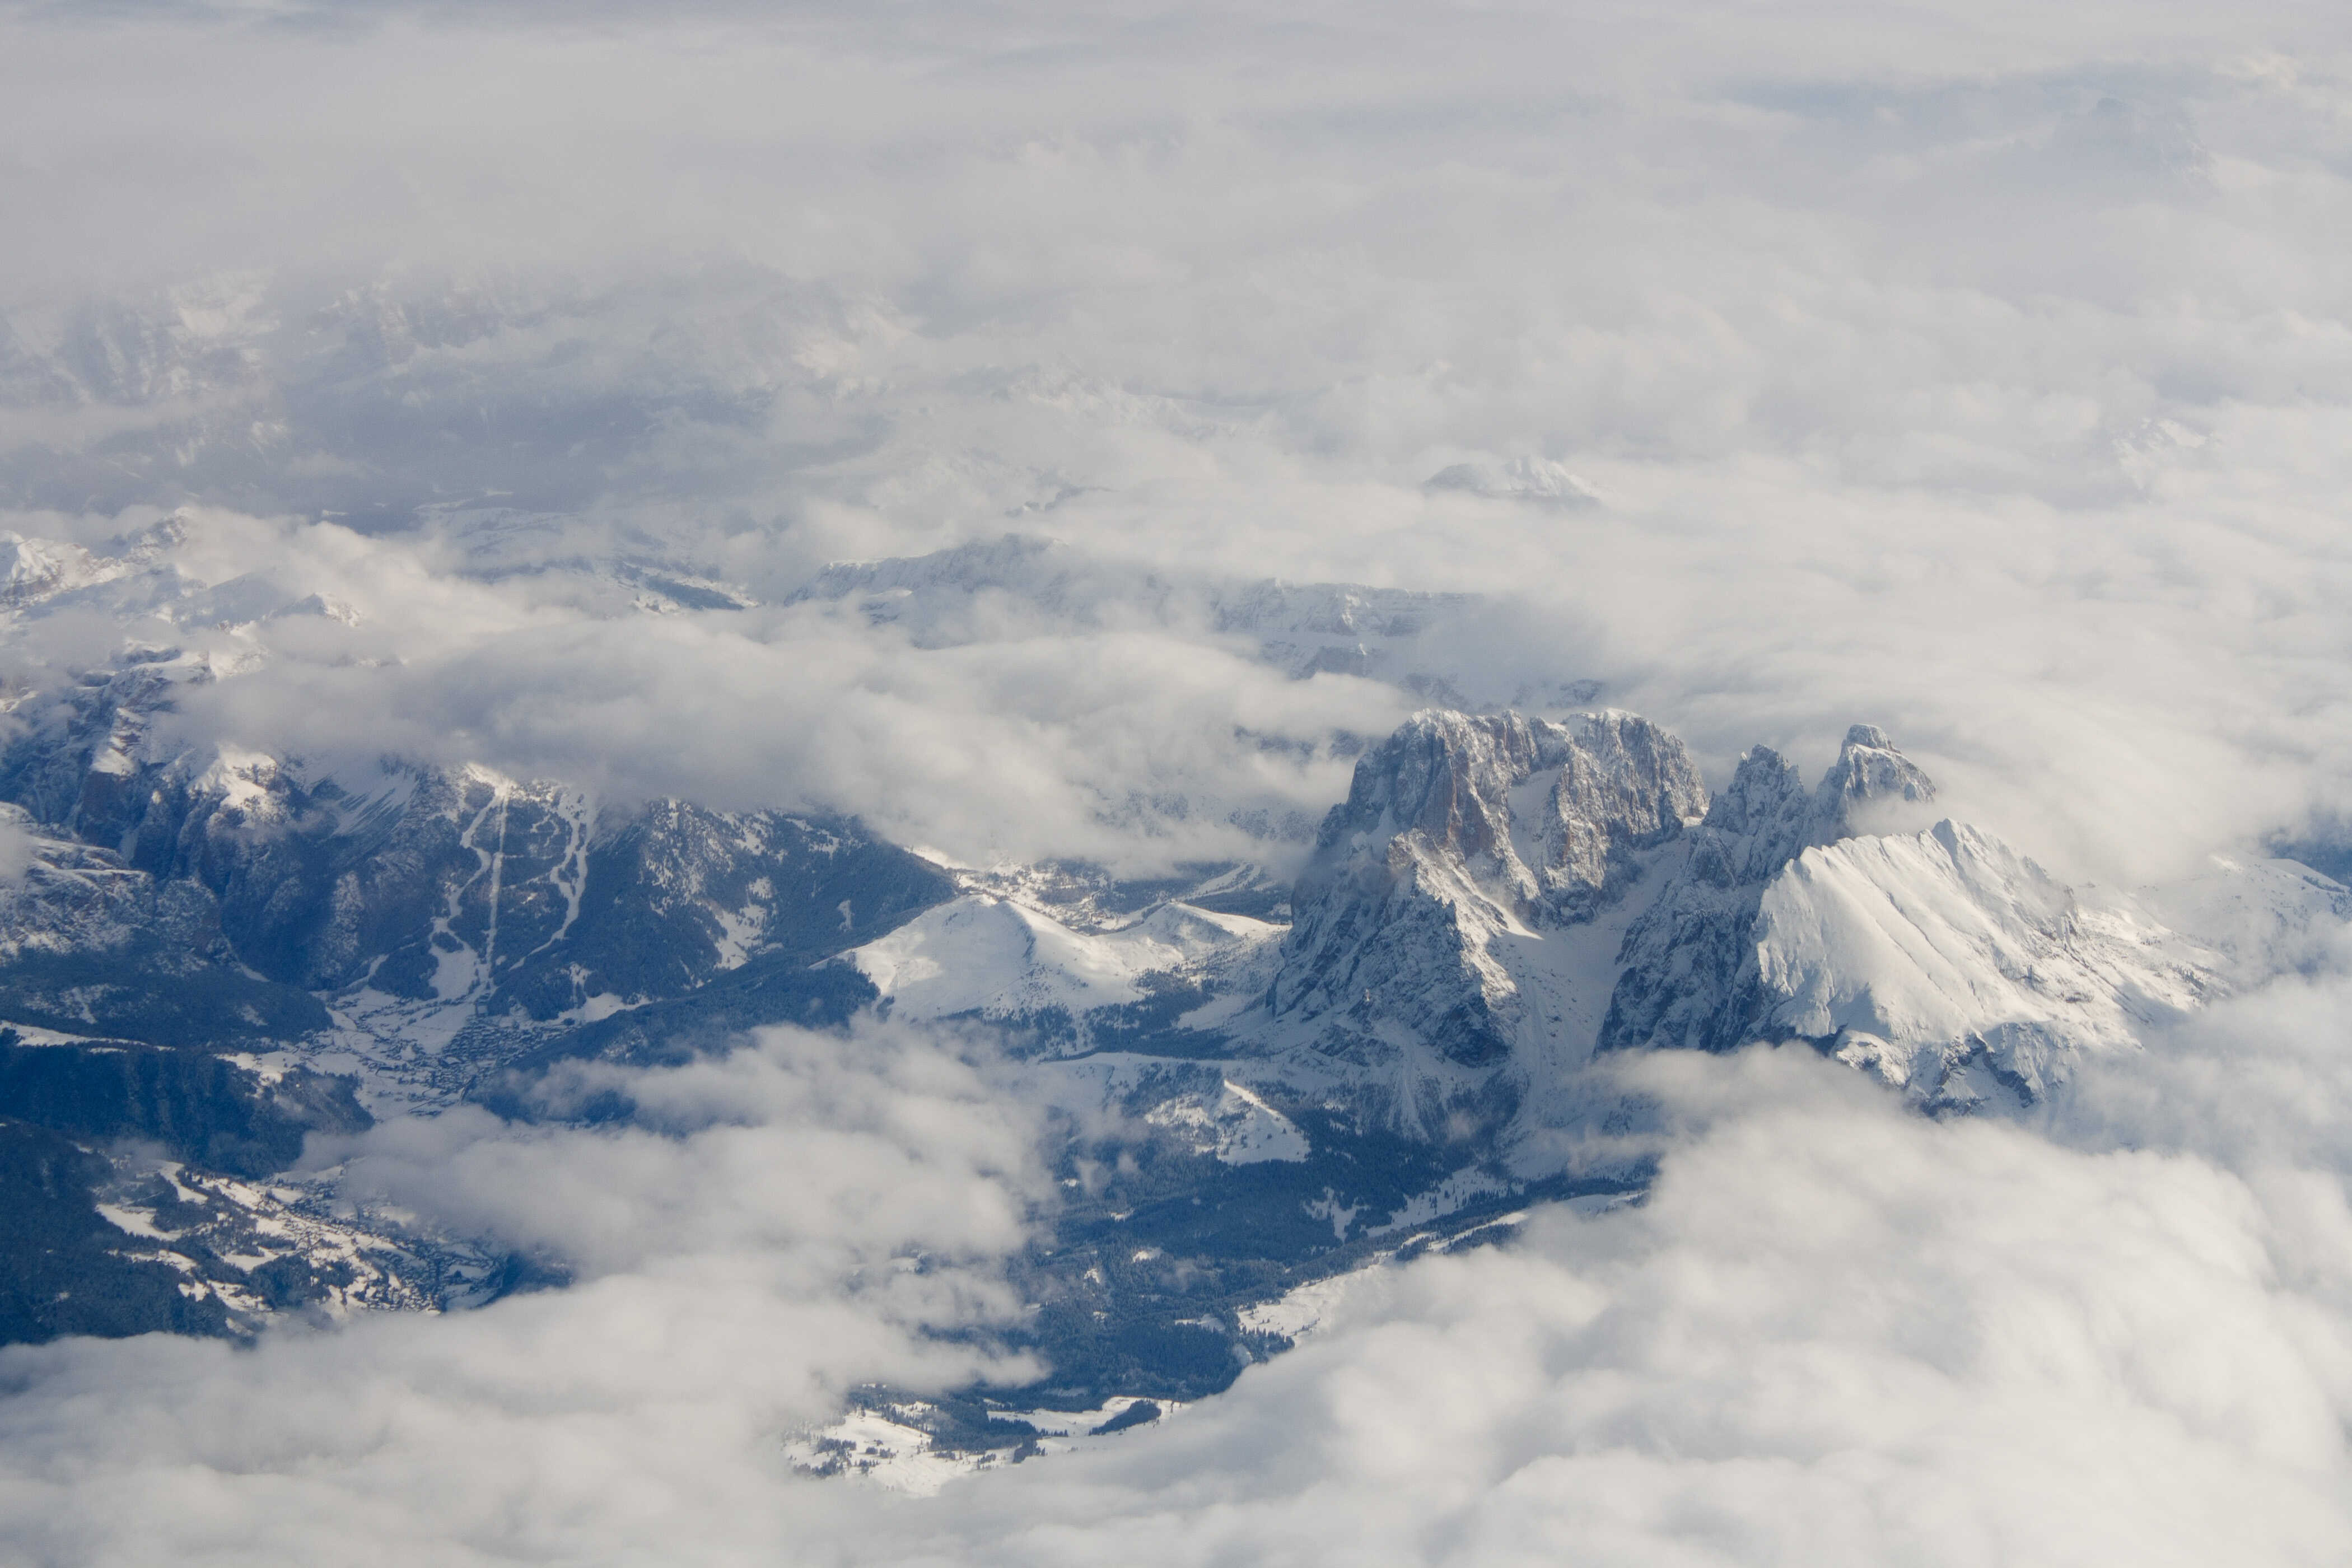 Die Alpen aus der Luft